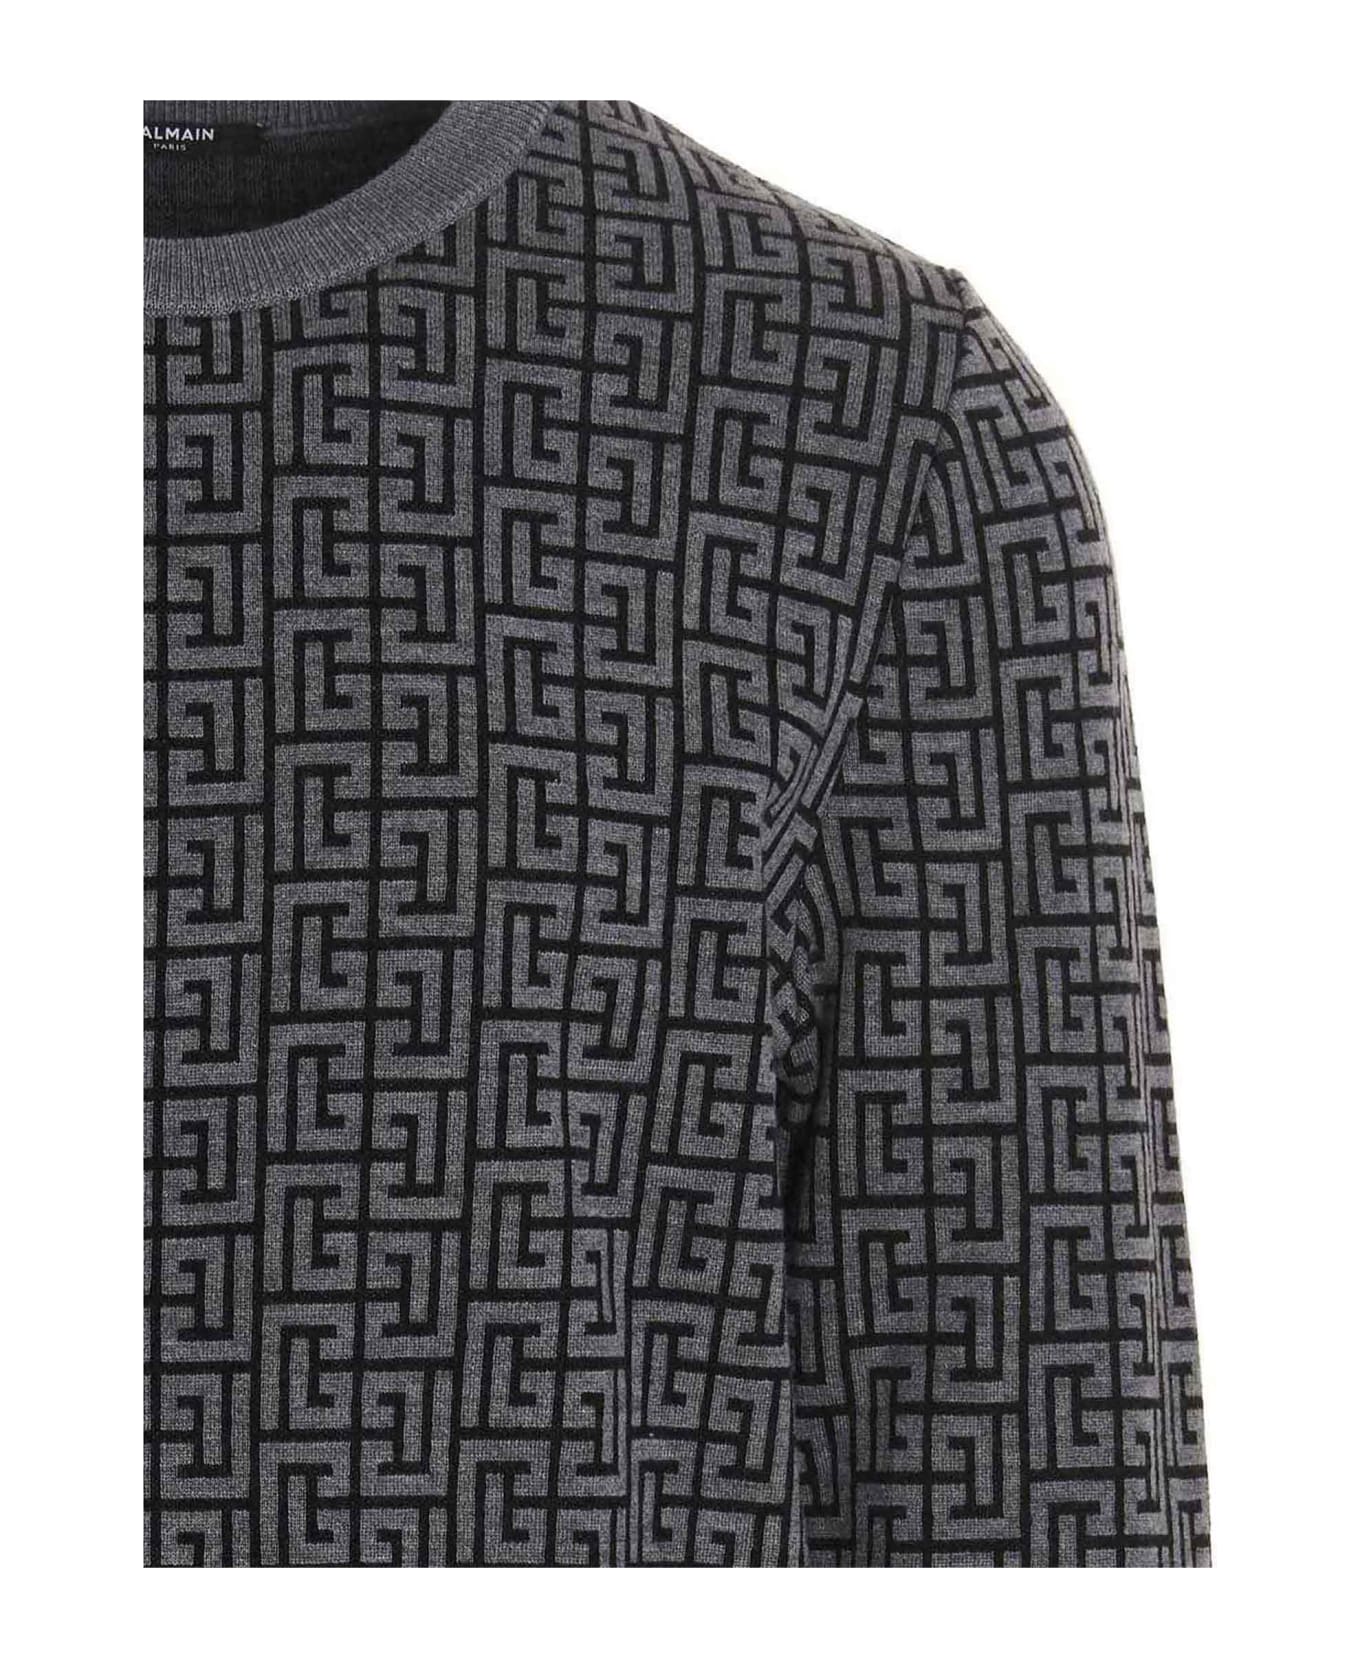 Balmain 'monogram  Sweater - Gray